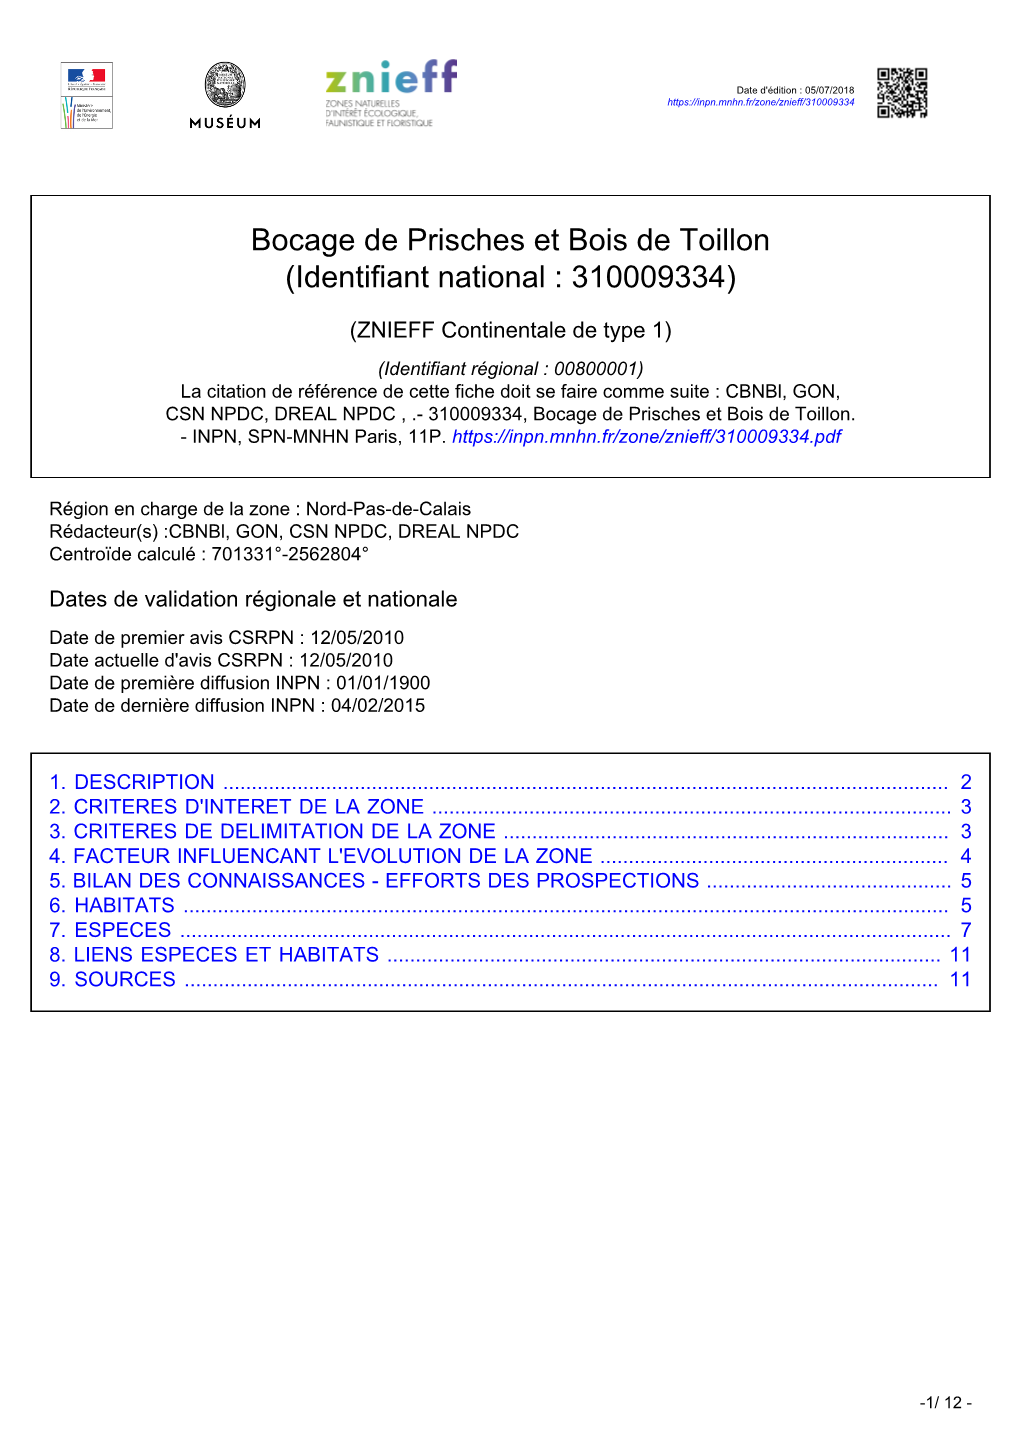 Bocage De Prisches Et Bois De Toillon (Identifiant National : 310009334)